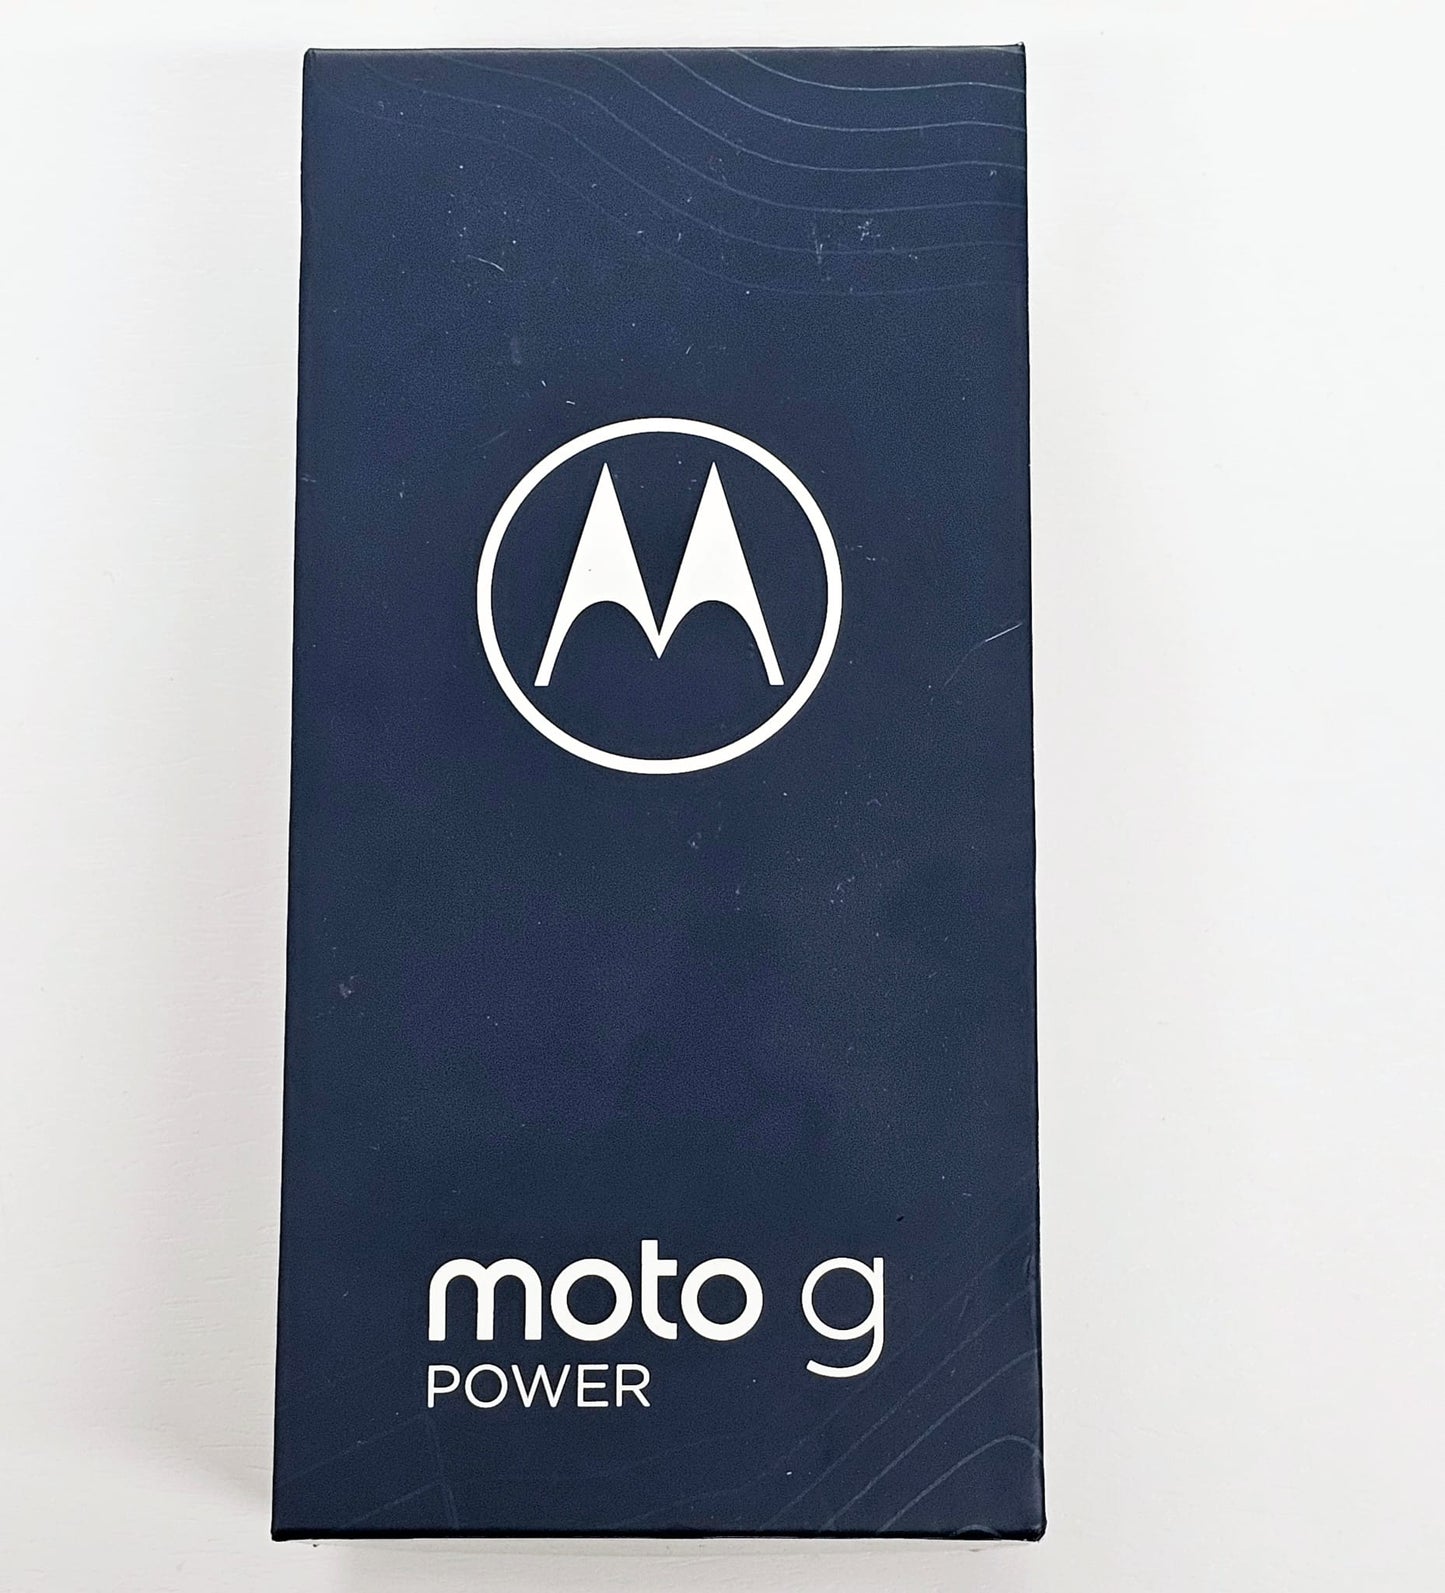 Moto G Power